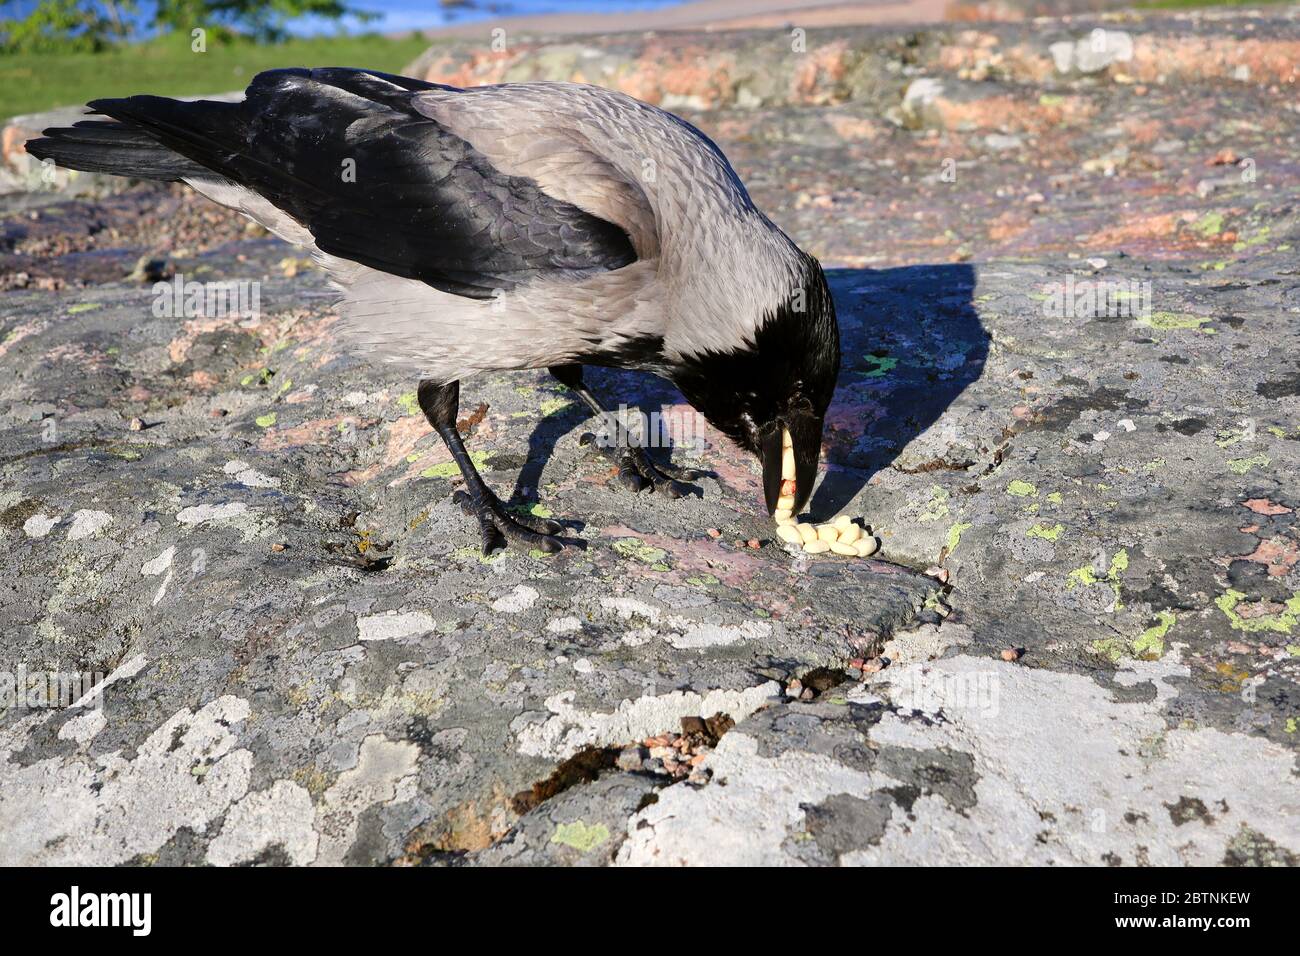 Corvo con cappuccio, cornix Corvus, ama mangiare arachidi. I corvi sono uccelli intelligenti noti anche per conservare il loro cibo per breve o lungo termine. Foto Stock